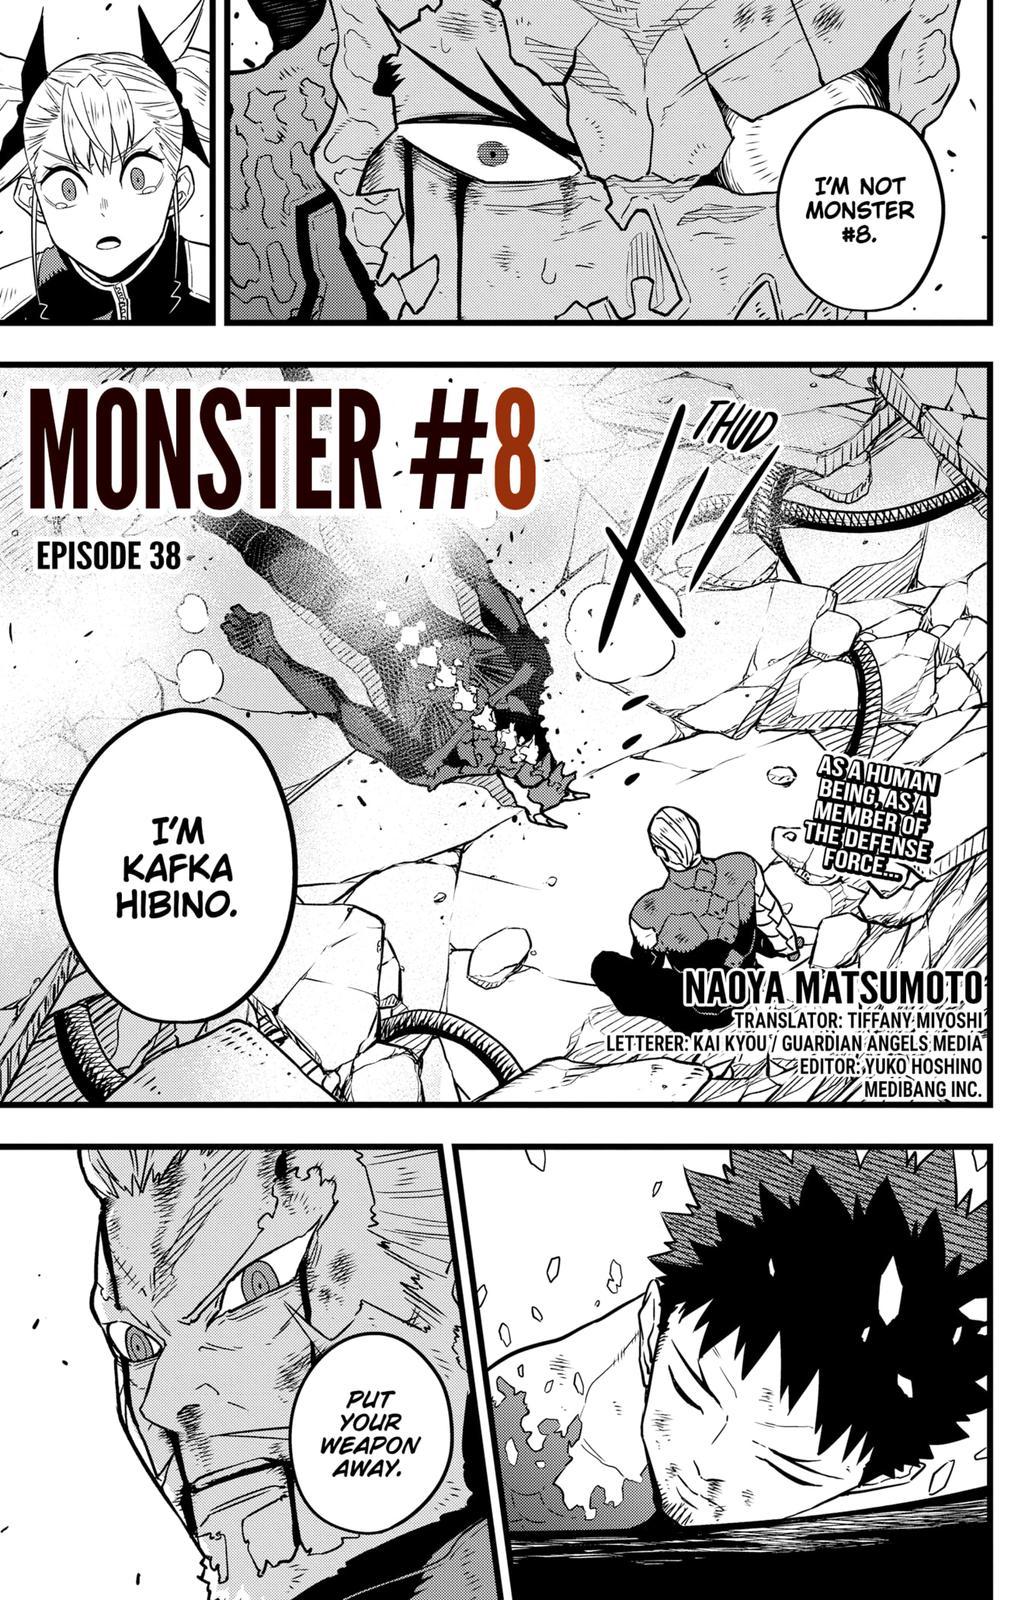 Kaiju no 8, Kaiju no 8 manga, Kaiju no 8 online, Kaiju no 8 manga online, read Kaiju no 8, read Kaiju no 8 manga, read Kaiju no 8 online, read Kaiju no 8 manga online, Kaiju no 8 chapter, read Kaiju no 8 chapter, Kaiju no 8 chapters, Monster #8, Monster #8 manga, Monster #8 online, Monster #8 manga online, read Monster #8, read Monster #8 manga, read Monster #8 online, read Monster #8 manga online, Monster #8 chapter, read Monster #8 chapter, Monster #8 chapters, Monster no 8, Monster no 8 manga, Monster no 8 online, Monster no 8 manga online, read Monster no 8, read Monster no 8 manga, read Monster no 8 online, read Monster no 8 manga online, Monster no 8 chapter, read Monster no 8 chapter, Monster no 8 chapters, 8kaijuu, 8kaijuu manga, 8kaijuu online, 8kaijuu manga online, read 8kaijuu, read 8kaijuu manga, read 8kaijuu online, read 8kaijuu manga online, 8kaijuu chapter, read 8kaijuu chapter, 8kaijuu chapters, kaiju no 8 reddit, kaiju no 8 chapter 33, kaiju 8, kaiju no 8 manga, kaiju no. 8 manga raw, kaiju no 8 manga chapter 4, kaiju no 8 manga book, kaiju no 8 manga clash, kaiju no 8 manga amazon, mangadex kaiju no 8, kaiju no 8 manga chapter 9, kaiju no 8 manga viz, kaiju no 8 manga chapter 8, kaiju no 8 mangadex, kaiju no 8 manganelo, kaiju no 8 mangaclash, kaiju no 8 mangahere, kaiju no 8 mangaupdates, monster 8 wiki, kaiju no 8 review, kaiju no 8 characters, kaiju no 8 volume 1, kaiju no 8 mangaplus, monster #8 wiki, kaiju no 8 wiki, kaiju no 8 anime release date, kaiju no 8 myanimelist, monster 8 manga plus, manga similar to monster 8, monster 8 mangaplus, monster 8 mangafreak, monster number 8 manga, 8 kaijuu myanimelist, 8kaijuu wiki, 8kaijuu 32, 8kaijuu chapter 32, 8kaijuu 21, 8kaijuu chapter 31, 8kaijuu 26, 8 kaiju manga, 8kaijuu manga raw, 8 kaiju manga plus, 8 kaiju manga online, kaiju manga indo, 8 kaijuu manga chapter 3, 8kaijuu manga 27, baca manga 8 kaijuu, manga like 8kaijuu, manga 8kaijuu chapter 8, hakaijuu mangakakalot, 8kaijuu mangaplus, 8 kaiju manganelo, 8kaijuu manga read, 8 kaijuu mangaku, 8 kaijuu mangaupdates, Kaiju no chapter 38, Kaiju no chapter 39, Kaiju no chapter 40, Monster #8 Chapter 38, Monster #8 Chapter 39, Monster #8 Chapter 40, Monster #8 Chapter 41, Monster #8 Chapter 1, kaiju no 8 Chapter 1, 8kaijuu chapter 1,